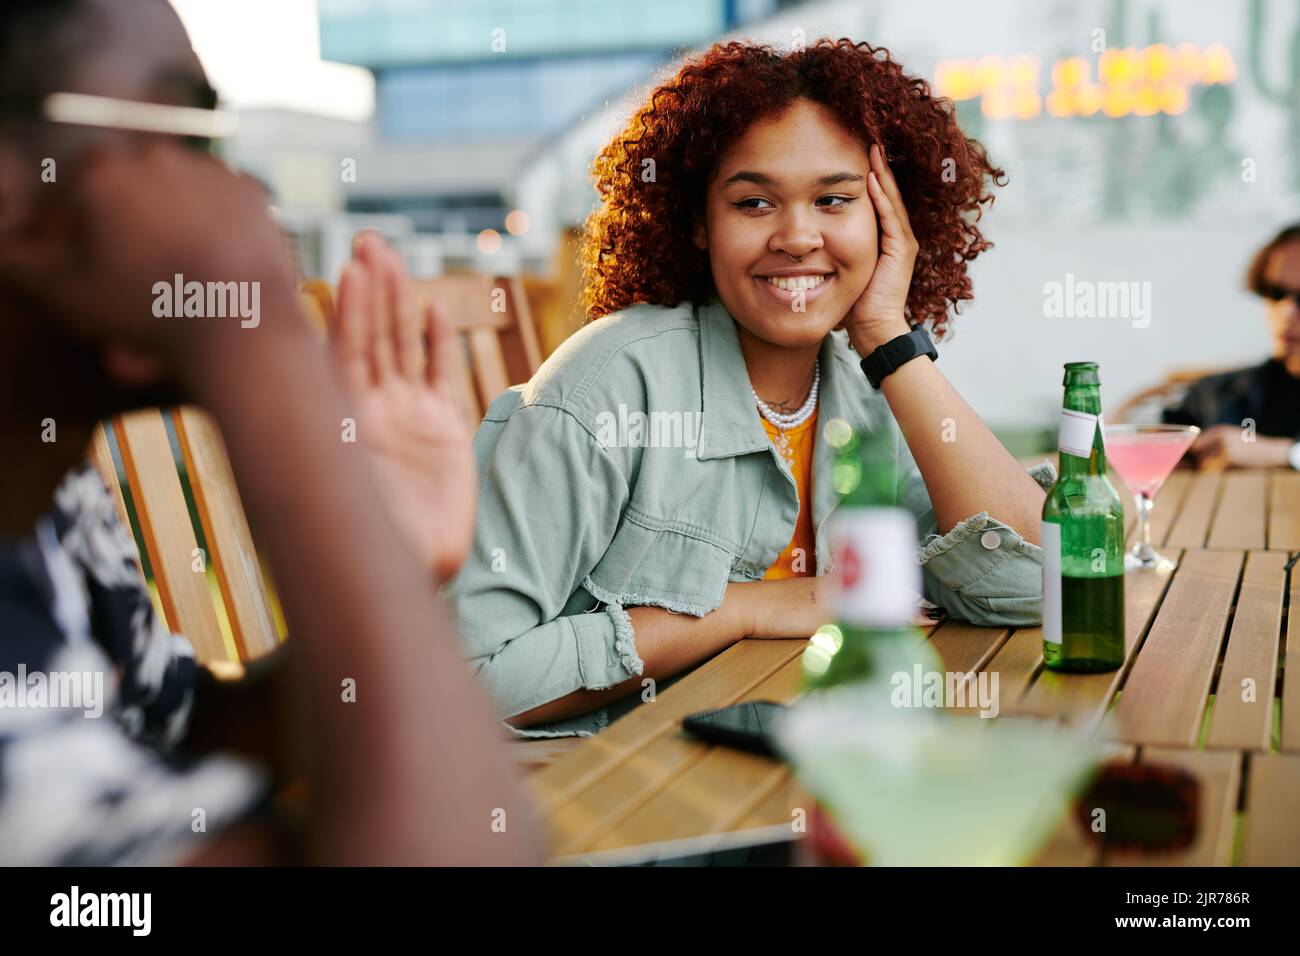 Glückliche junge schwarze Frau in Casualwear, die ihren Freund lächelnd ansieht, während sie vor ihm am Tisch sitzt und Bier trinkt Stockfoto